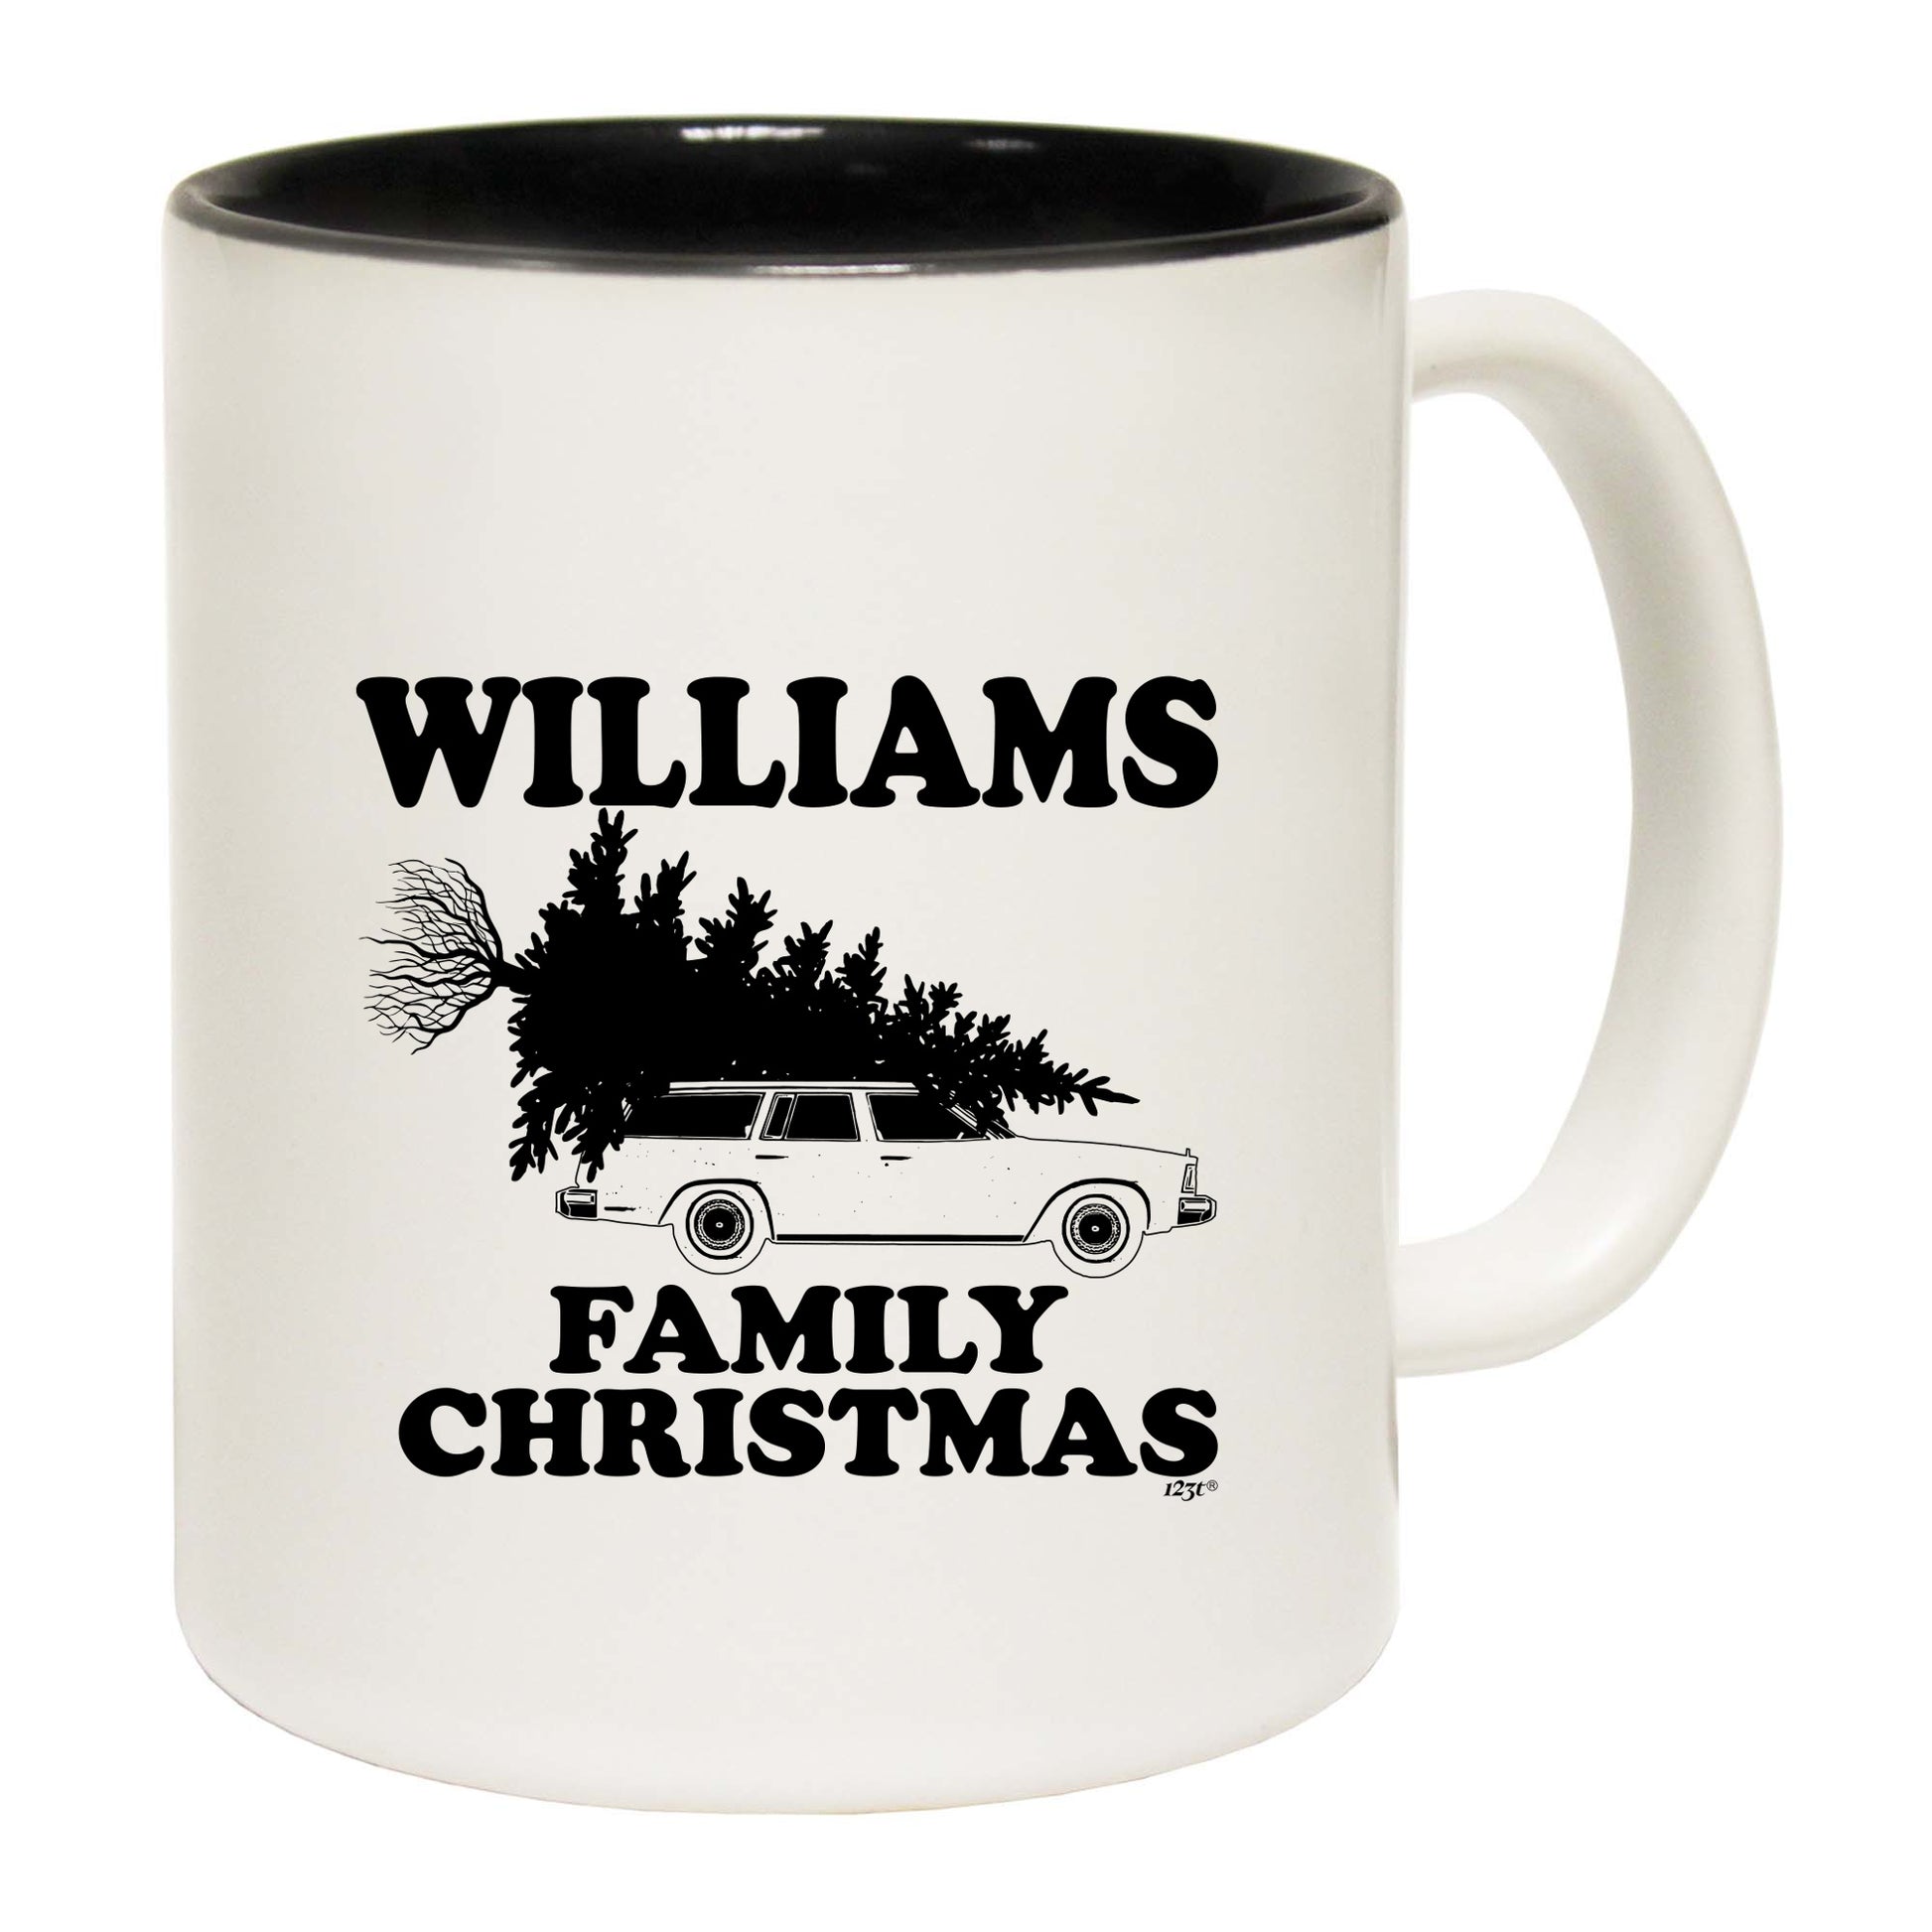 The Christmas Hub - Family Christmas Williams - Funny Coffee Mug